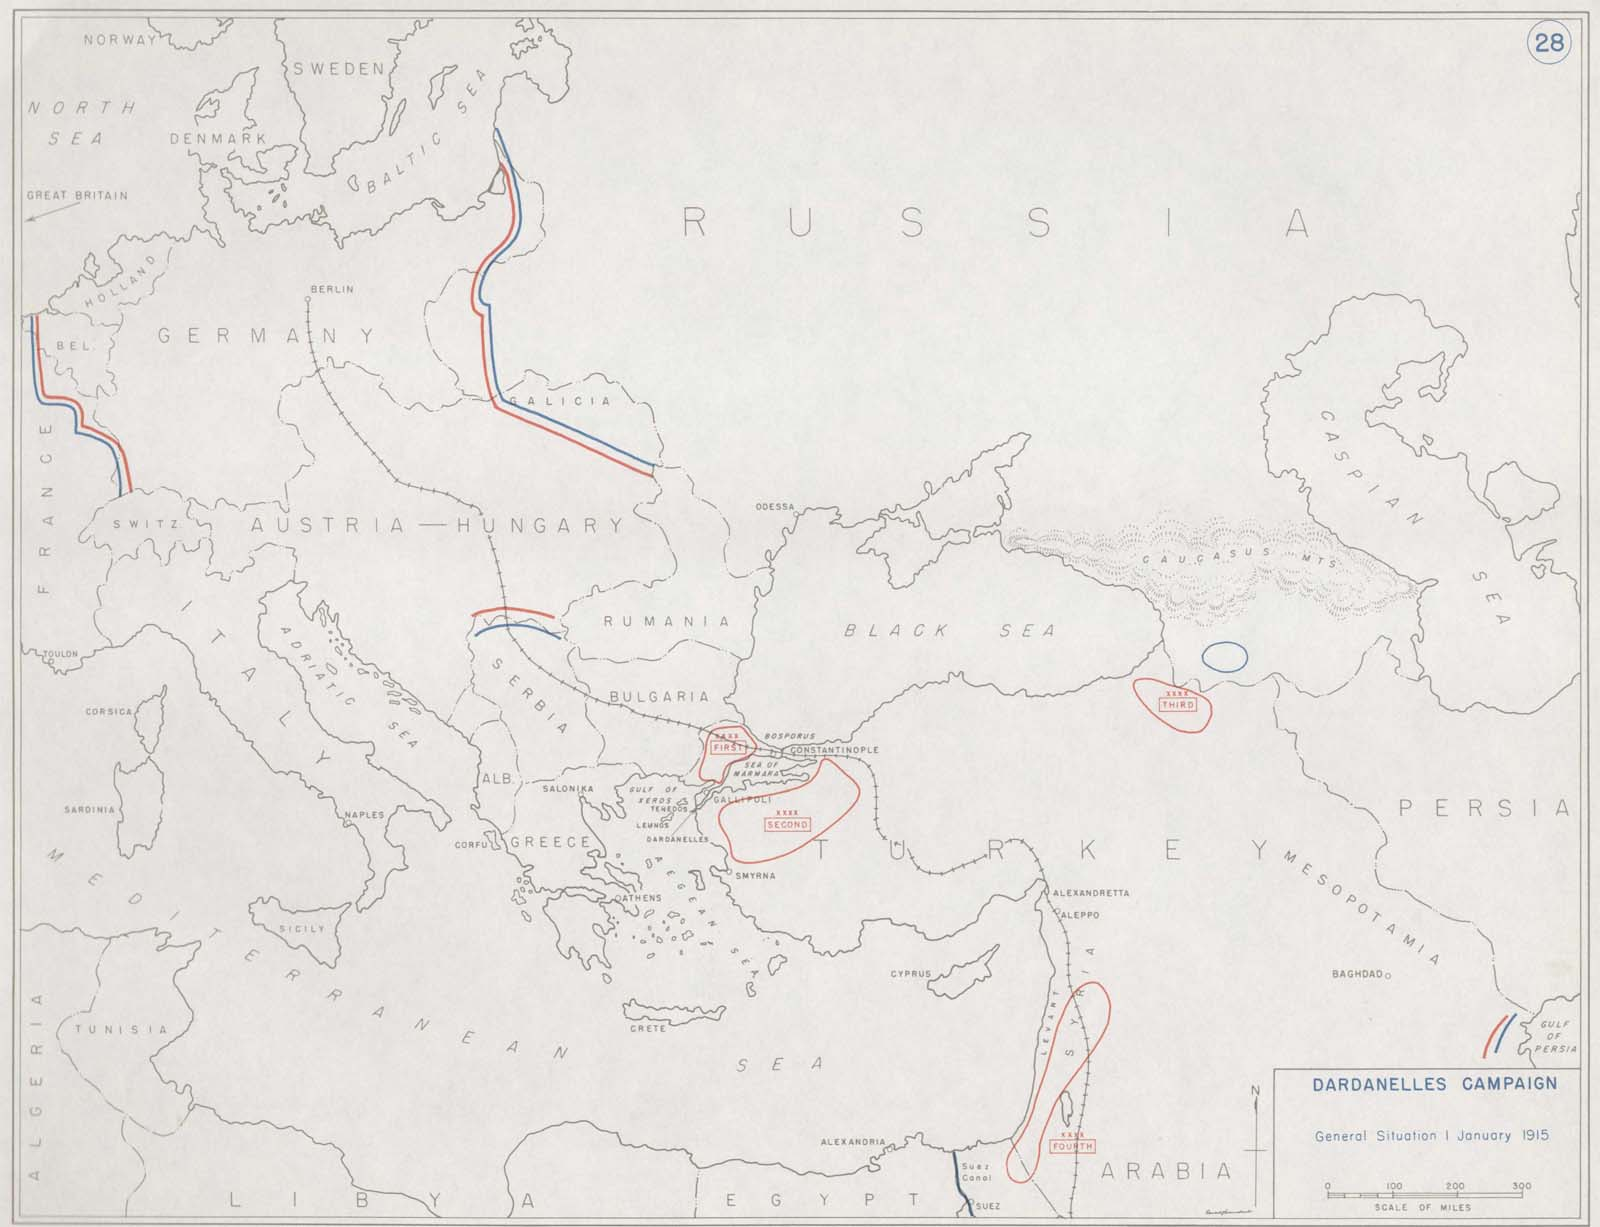 World War 1 Map Gallipoli